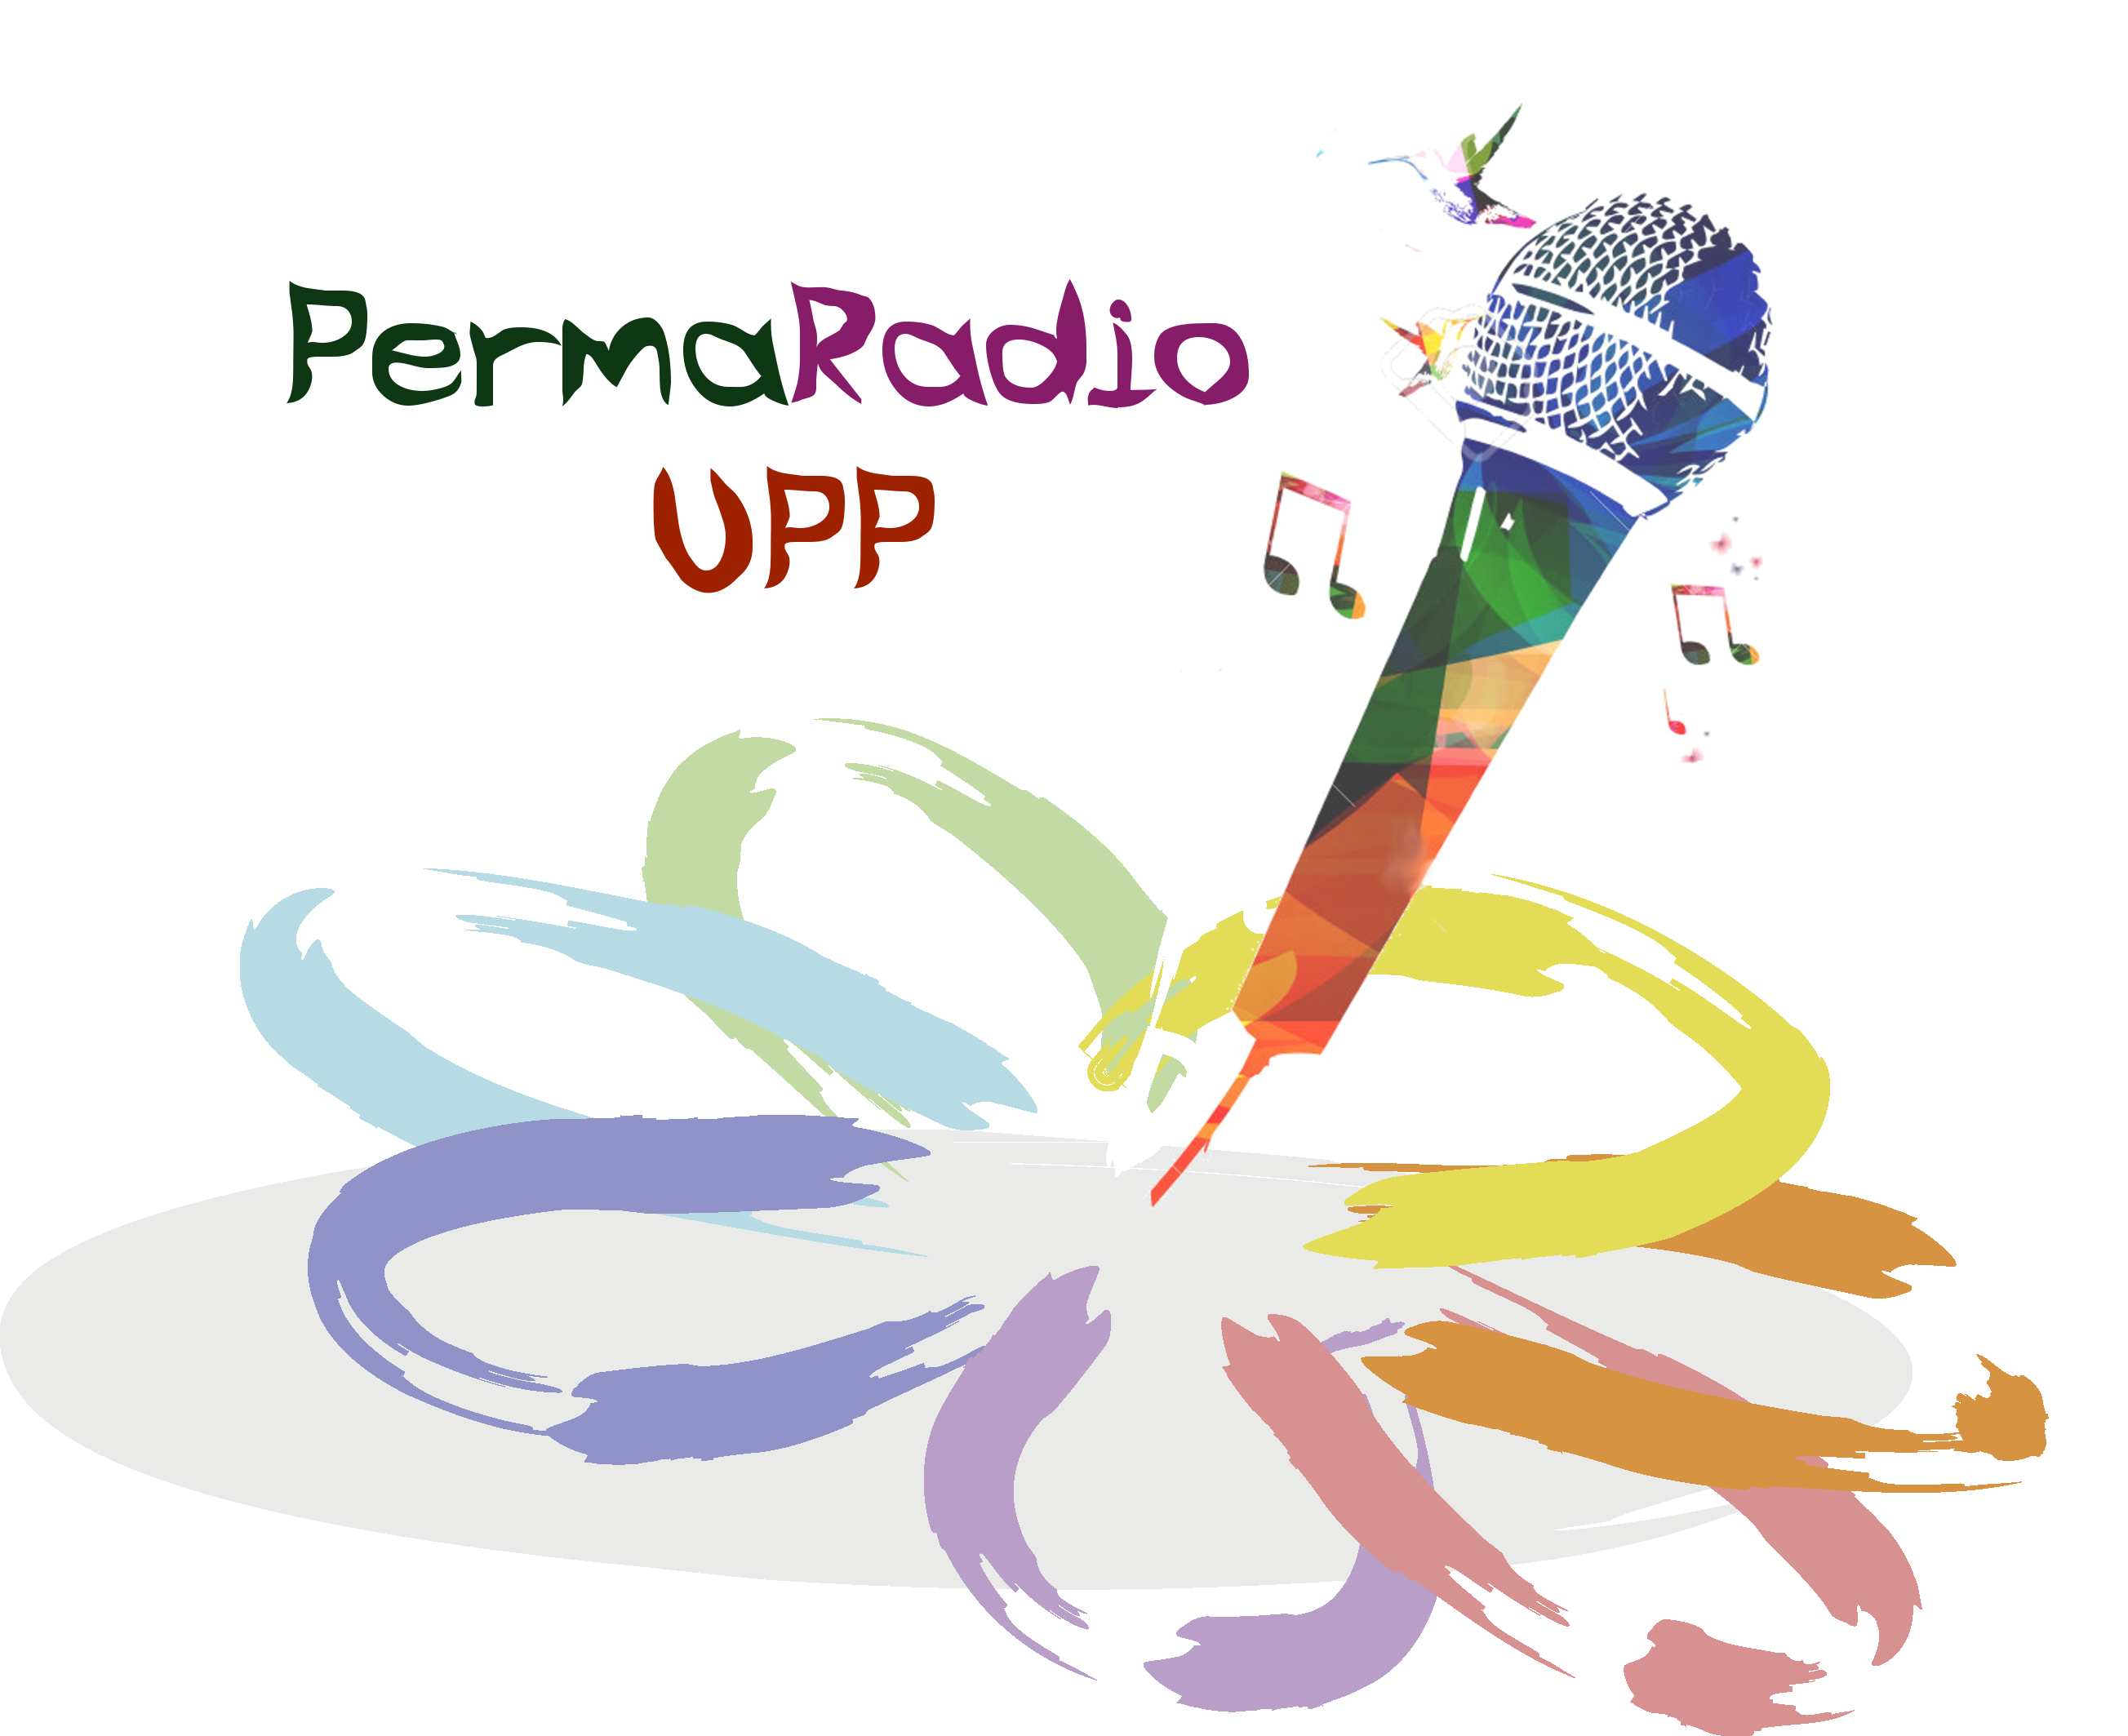 radio permacultural de la universidad popular de permacultura